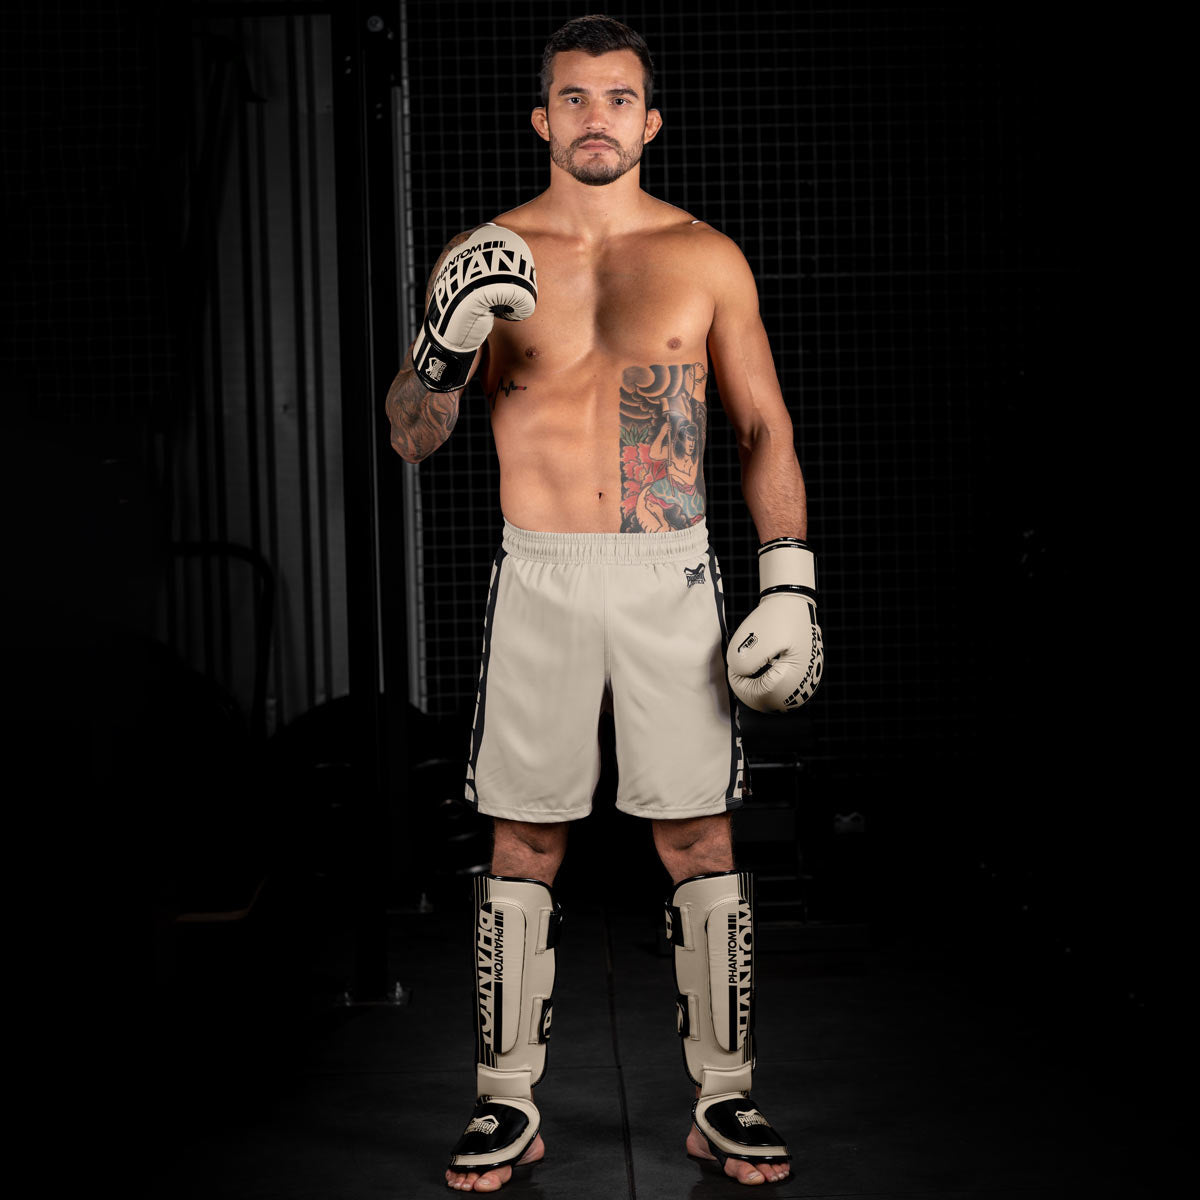 MMA Fighter im Gym mit der Sand farbenen Apex Fight Collection bestehend aus Boxhandschuhen, Hybrid Schienbeinschonern und Apex MMA Fightshorts.